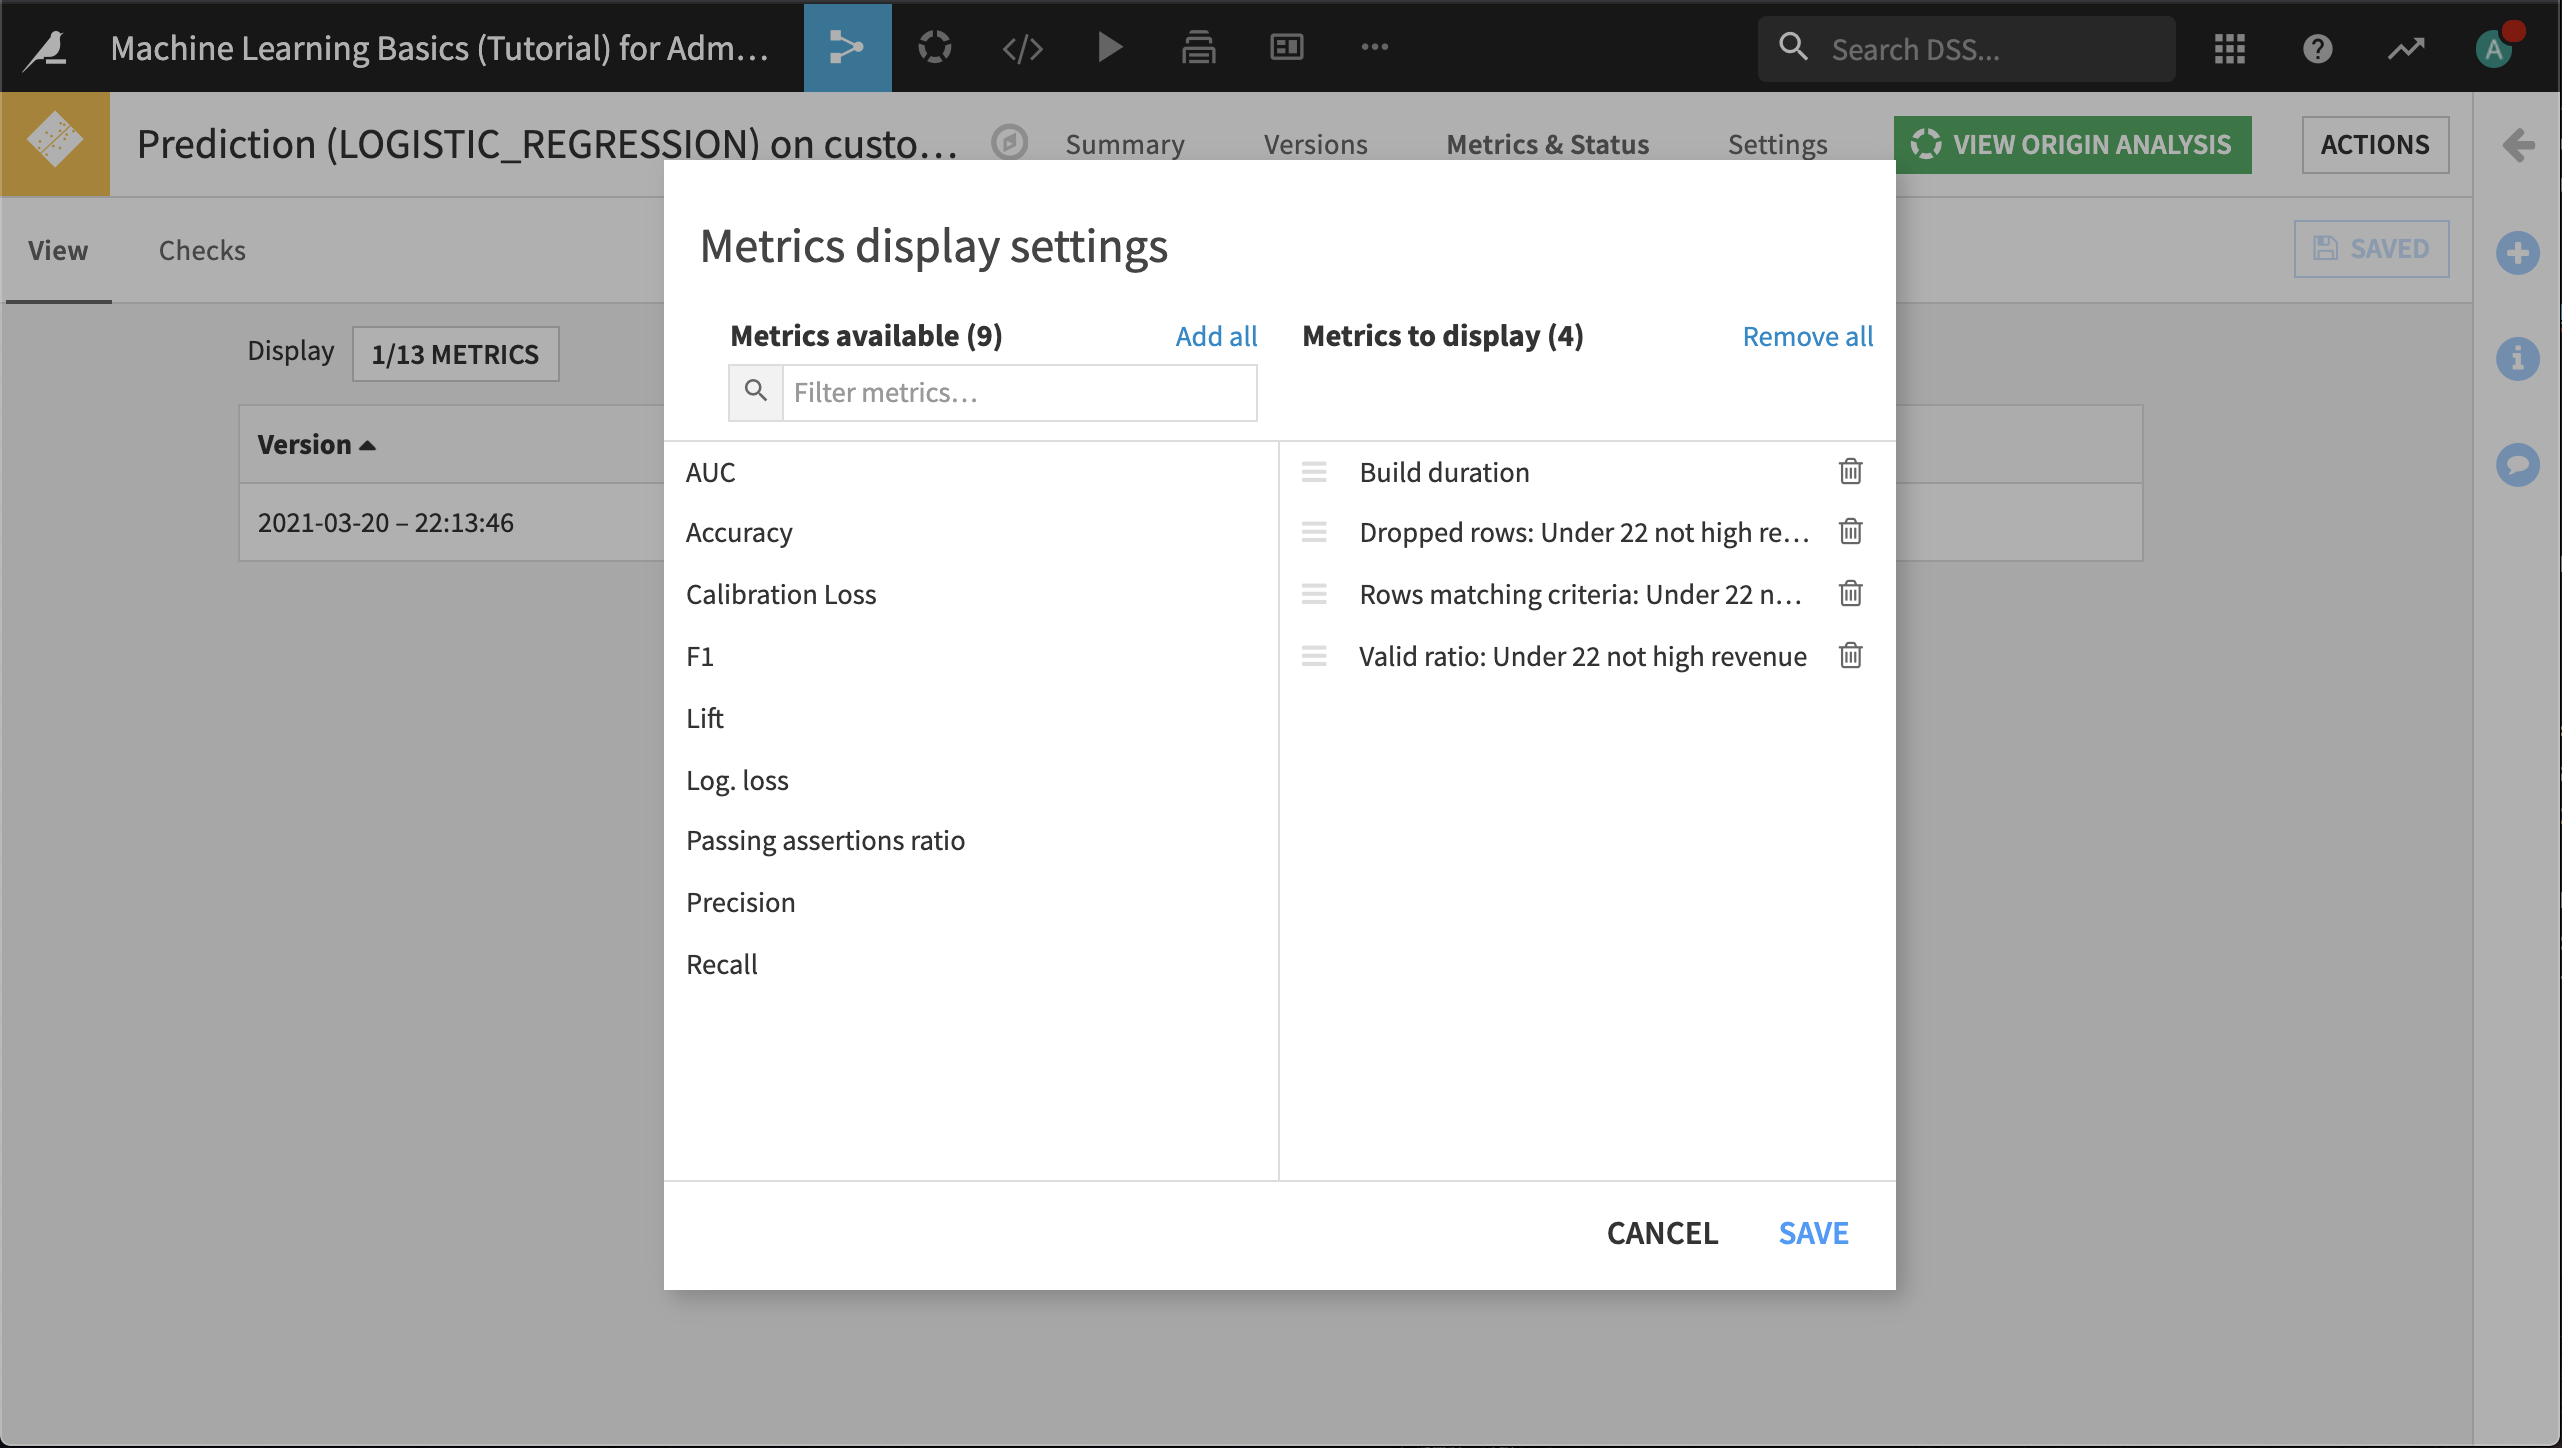 Model metrics display settings